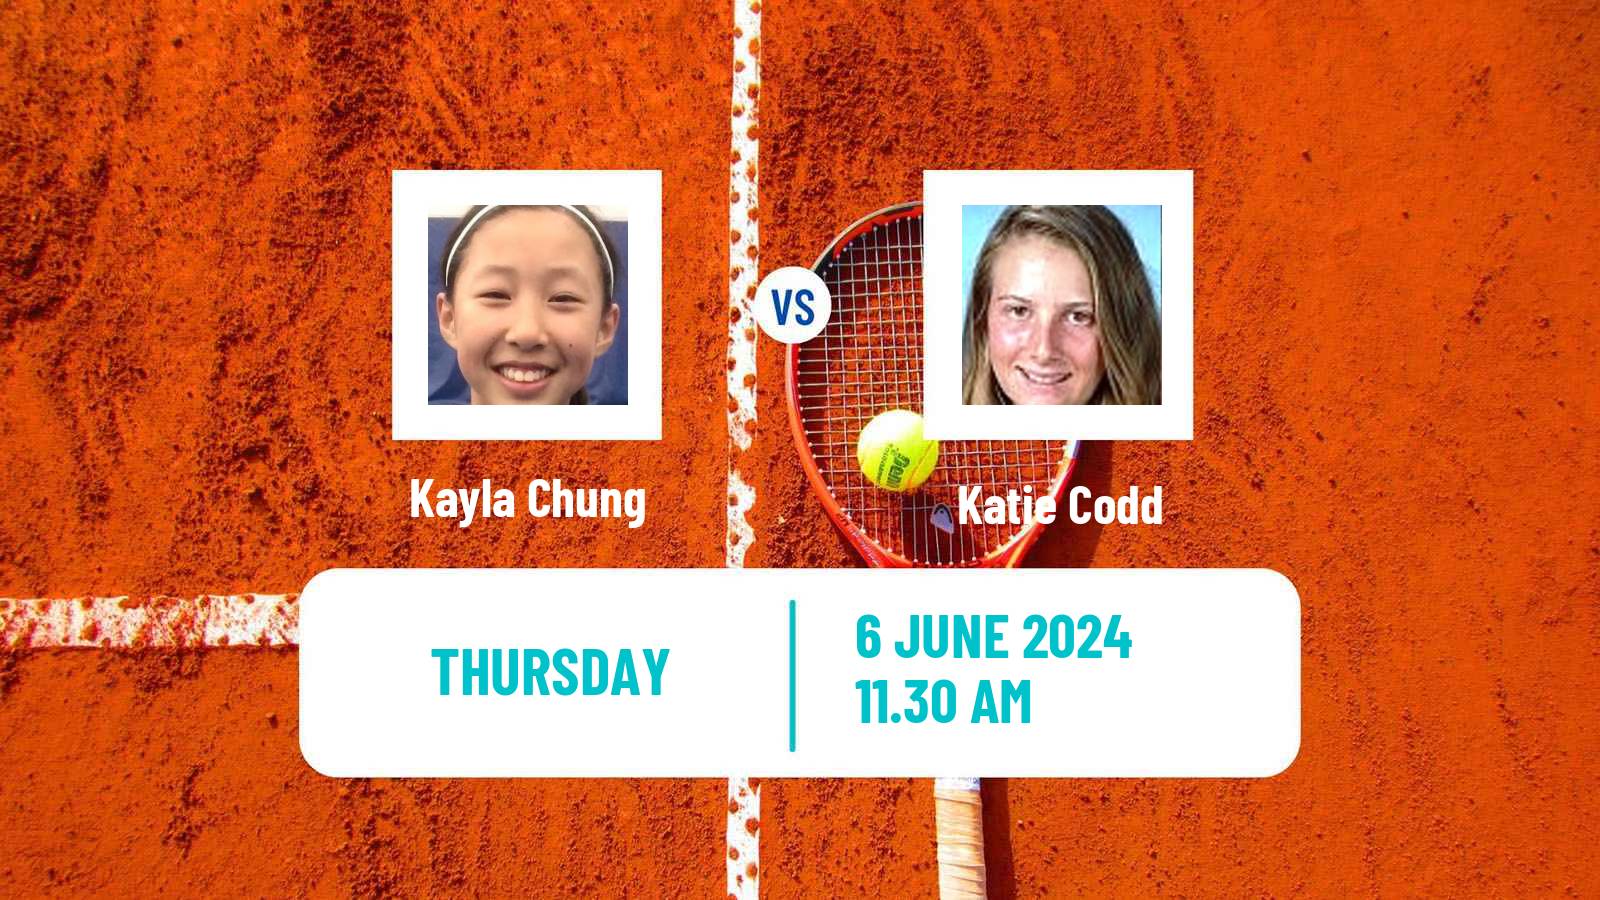 Tennis ITF W15 San Diego Ca 2 Women Kayla Chung - Katie Codd